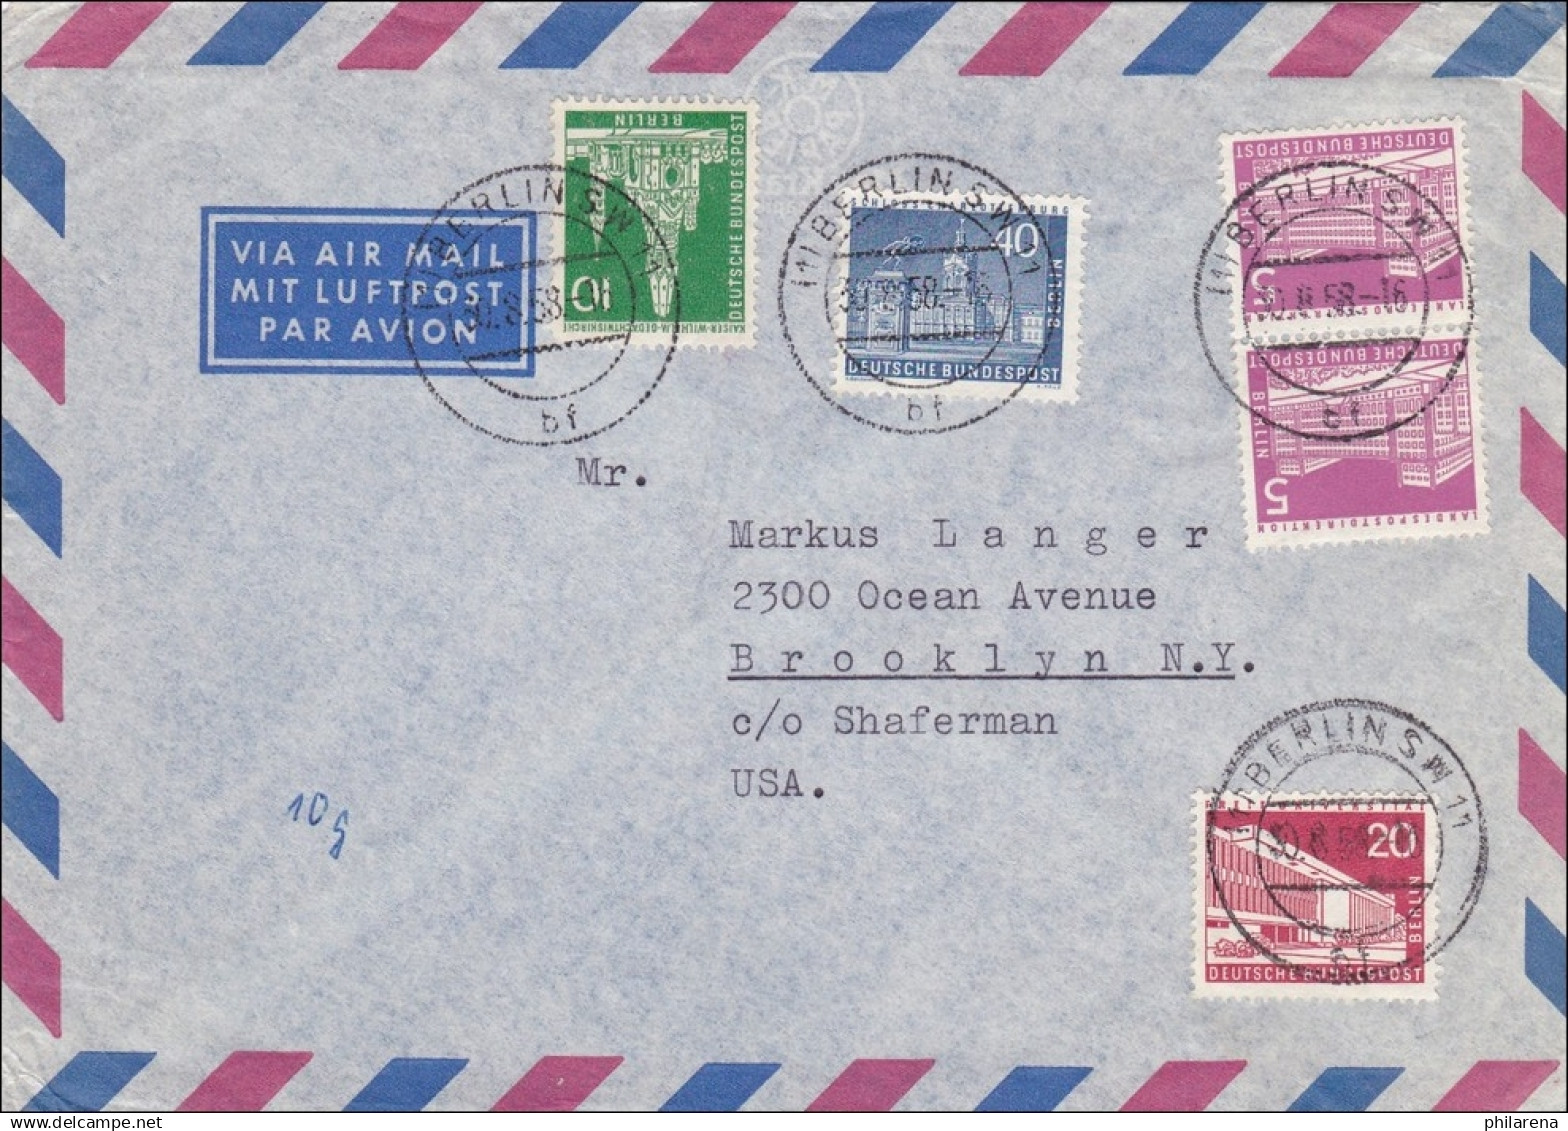 Luftpost Brief Nach USA 1958 - Lettres & Documents